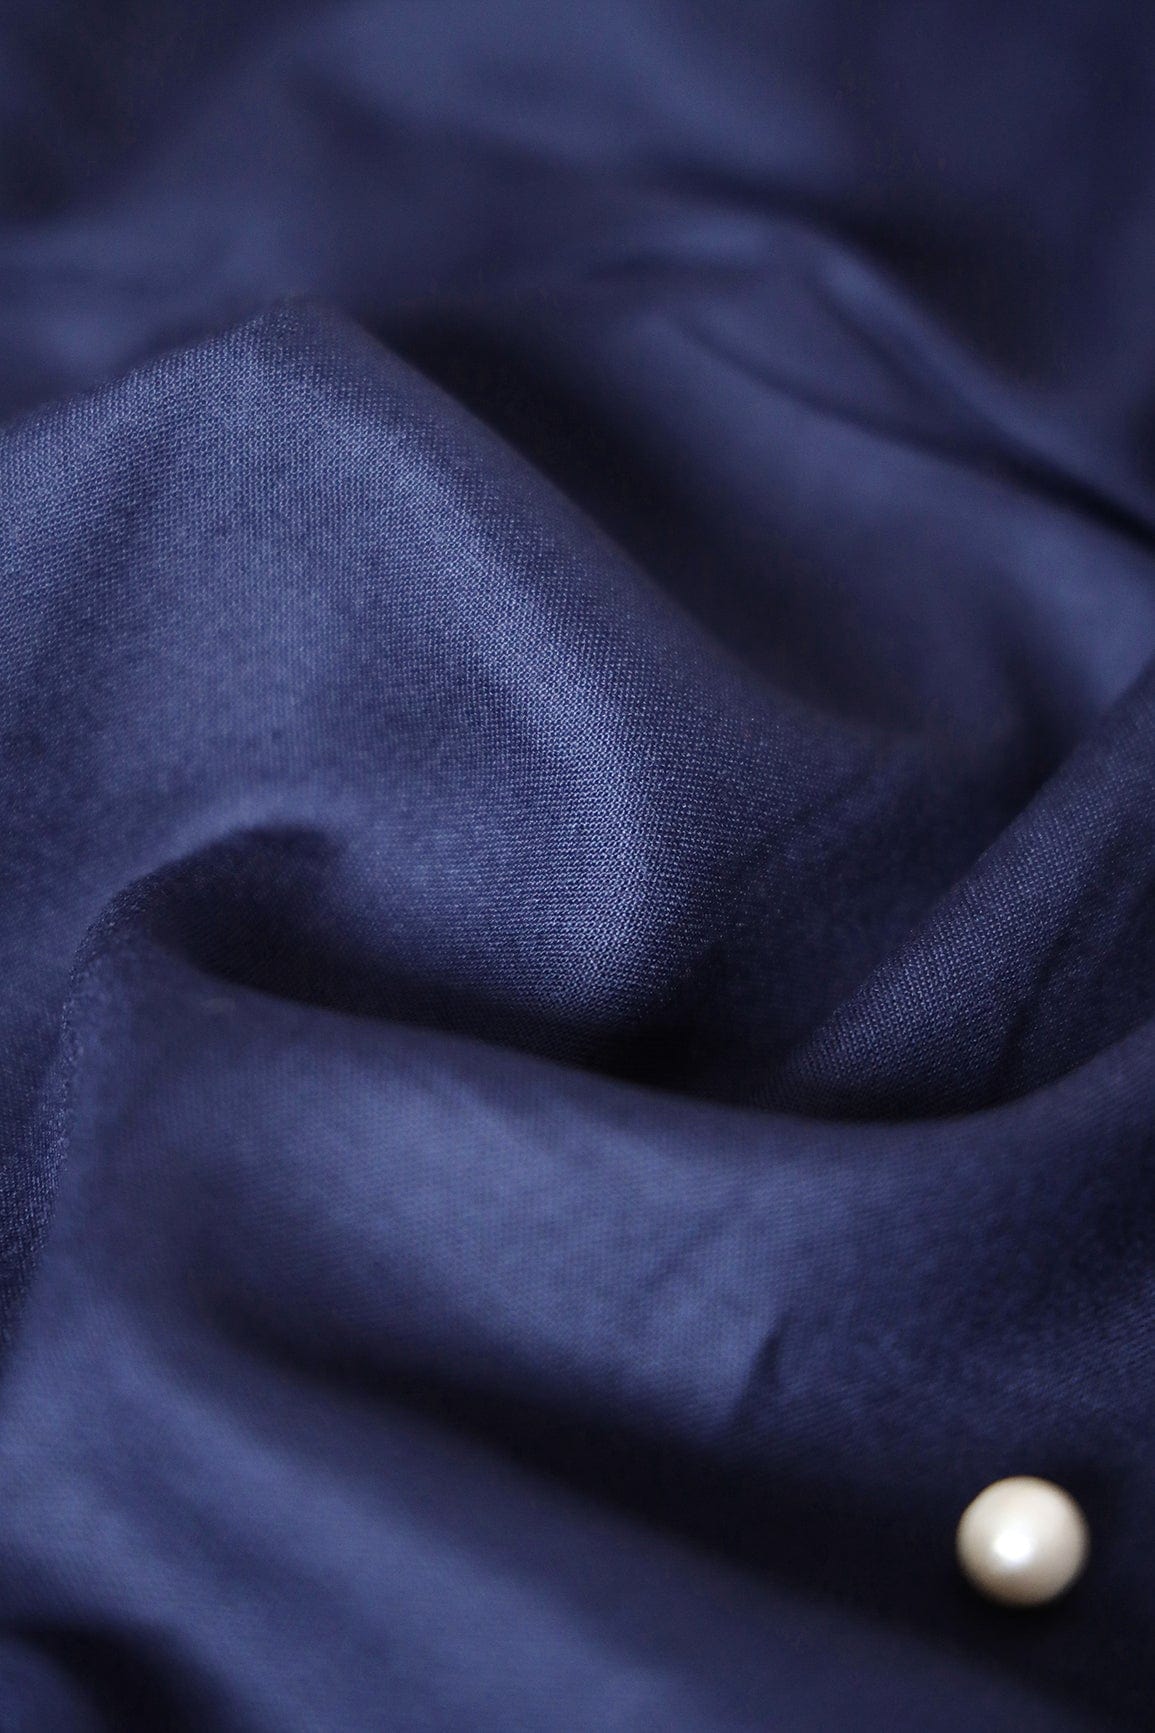 doeraa Plain Fabrics Navy Blue Dyed Rayon Fabric